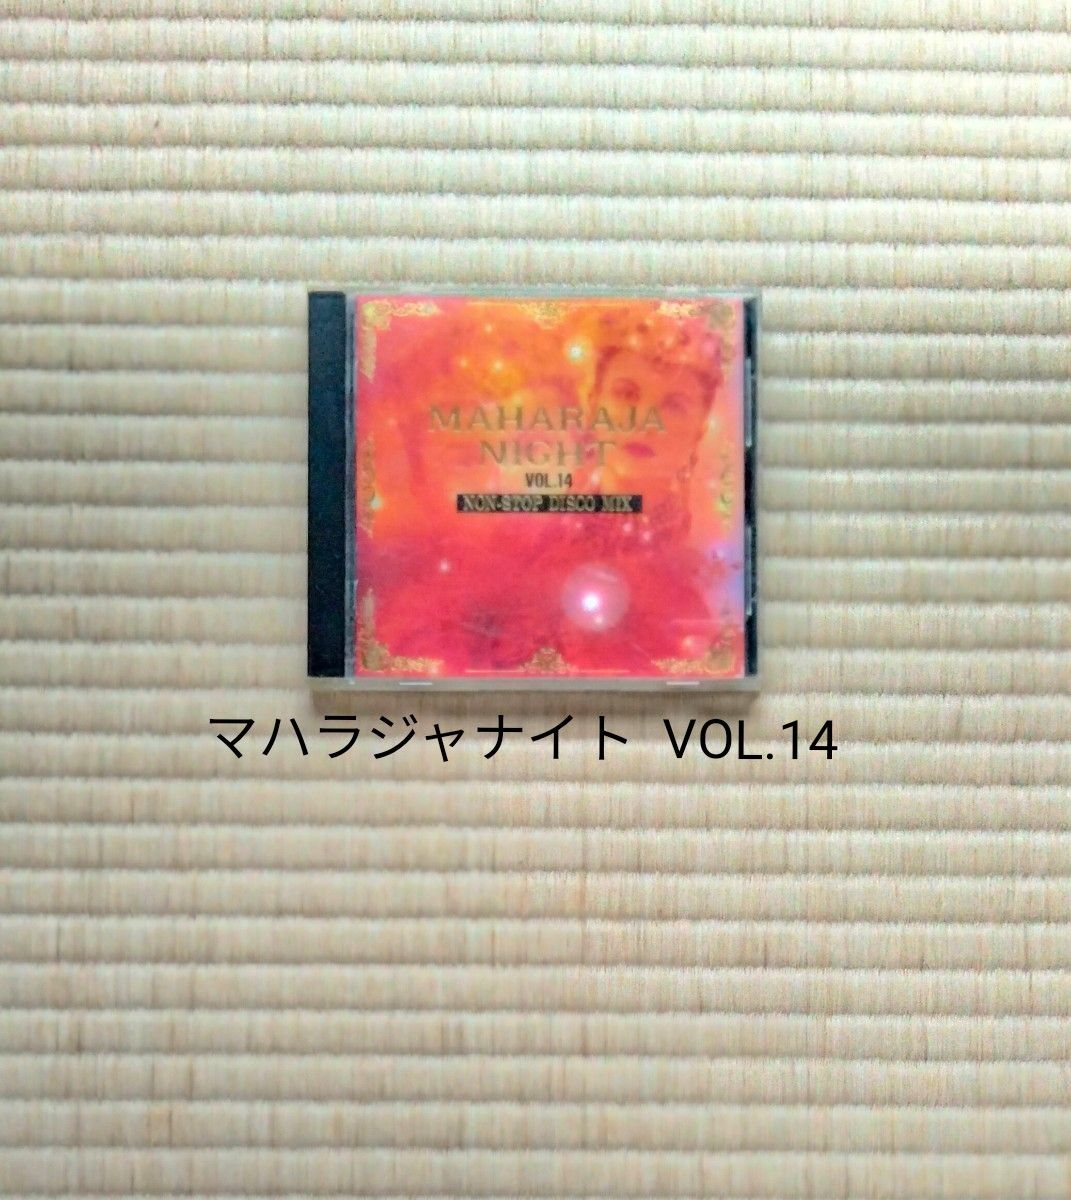 CD マハラジャナイト  VOL.14　 ノンストップ ディスコミックス　MAHARAJA NIGHT